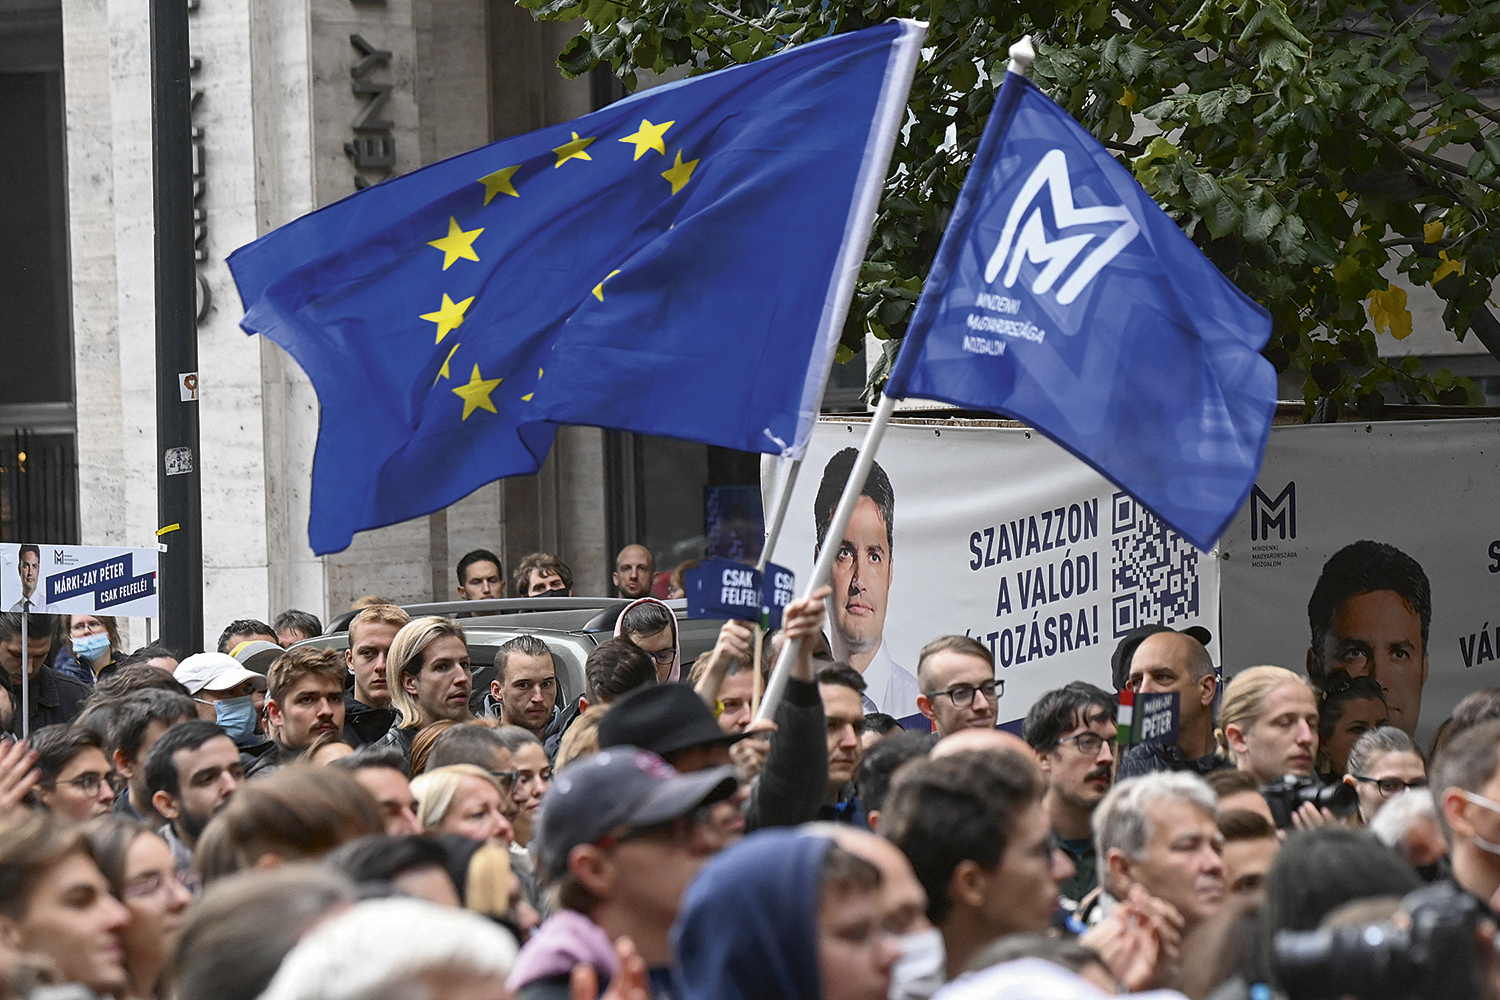 UNIÃO - Comício da oposição: um só candidato e bandeiras da UE e da Hungria -